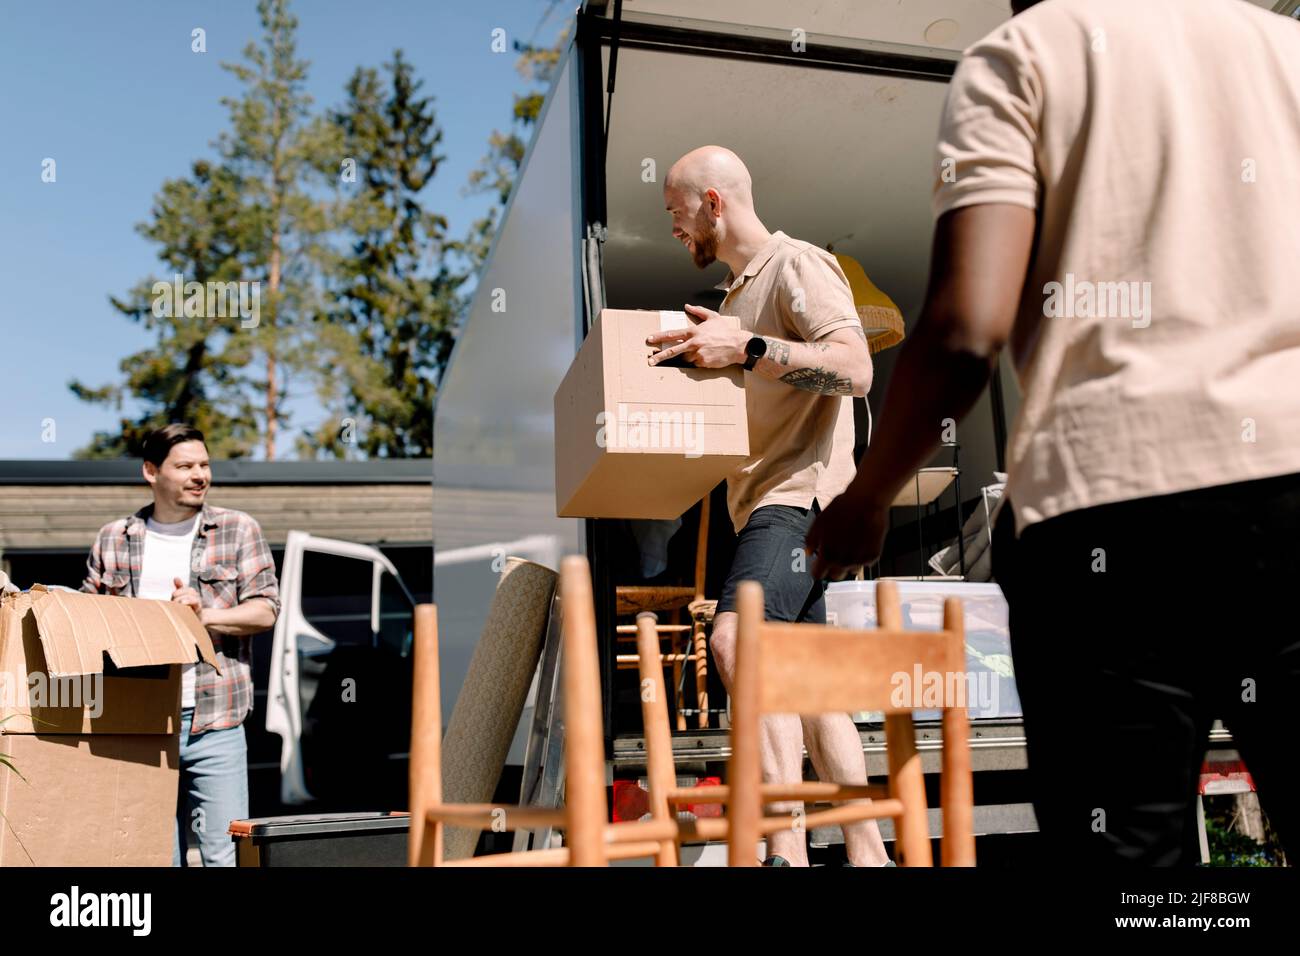 Empleados de la empresa de entrega que ayudan al hombre a descargar cajas del camión Foto de stock